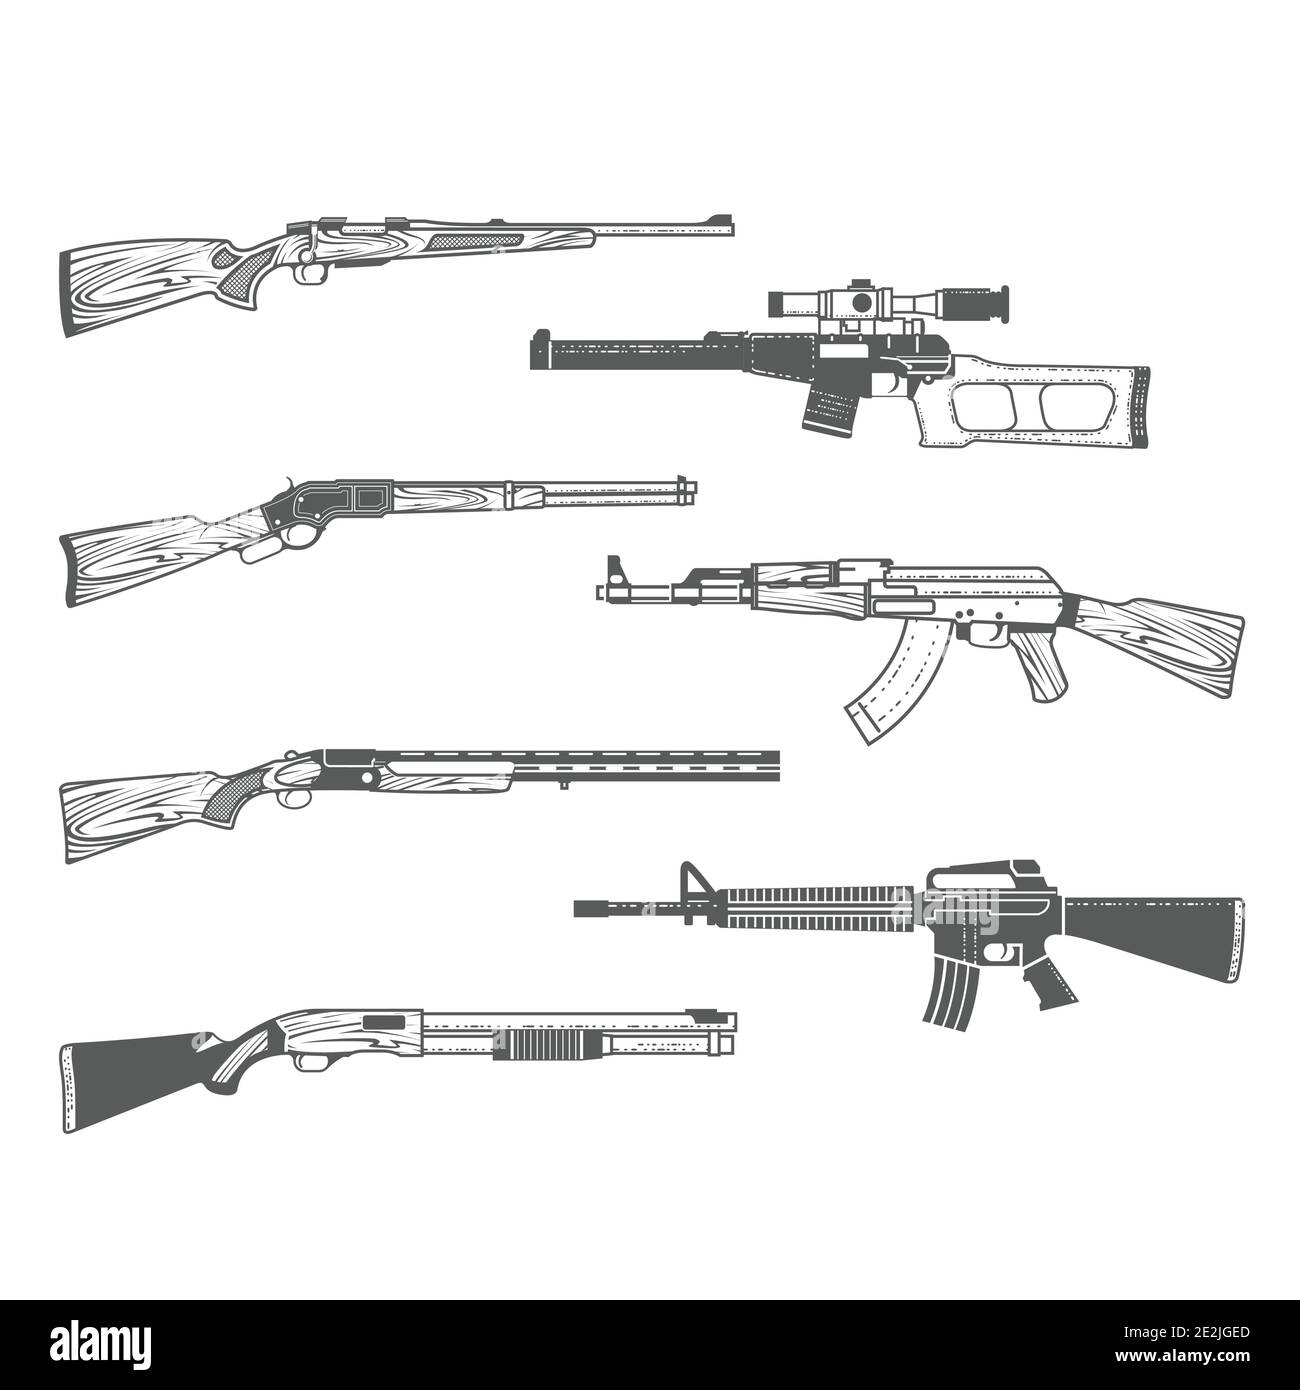 Vector Illustration Bolt Action Sniper Rifle: vetor stock (livre